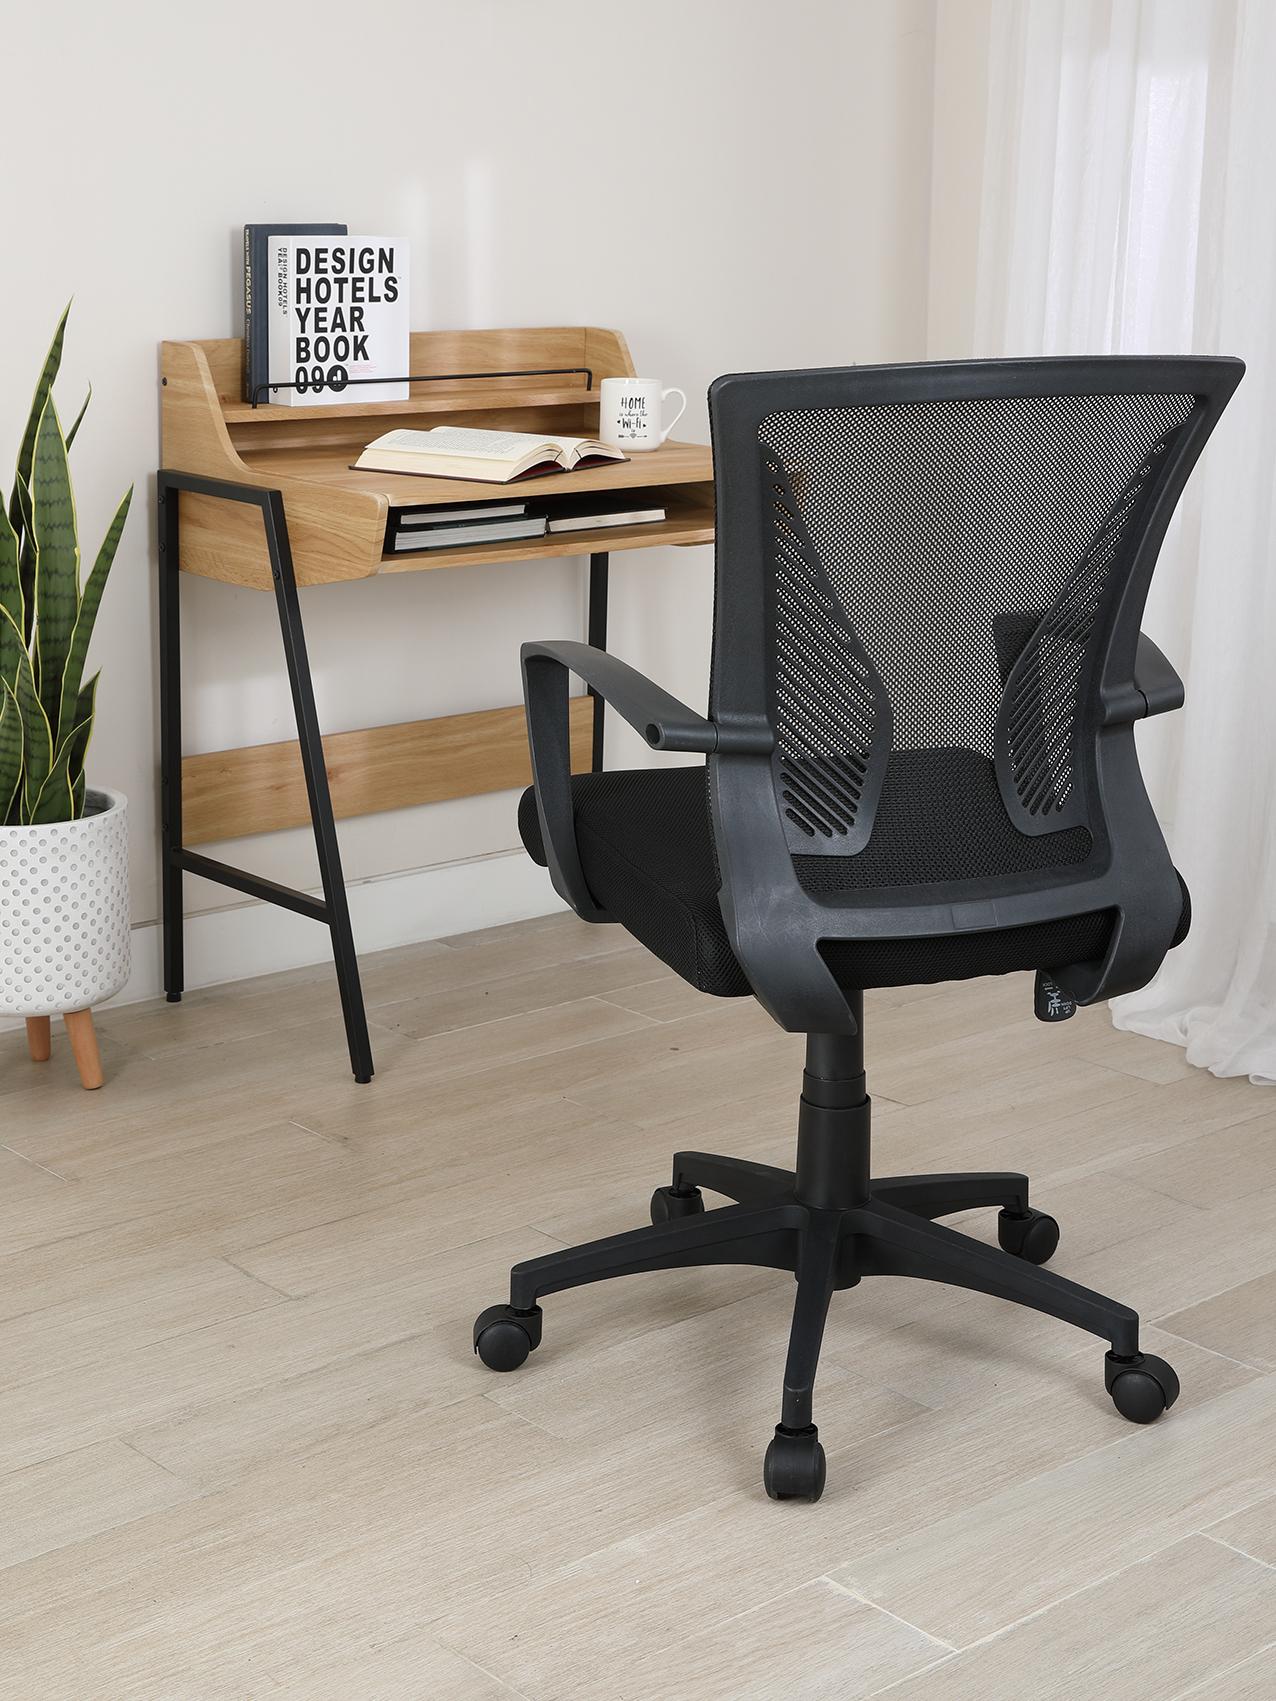 เก้าอี้สำนักงาน รุ่นเด็กซ์เตอร์ - สีดำ - เก้าอี้โต๊ะทำงาน เก้าอี้ออฟฟิศ วัสดุพลาสติกพีพี